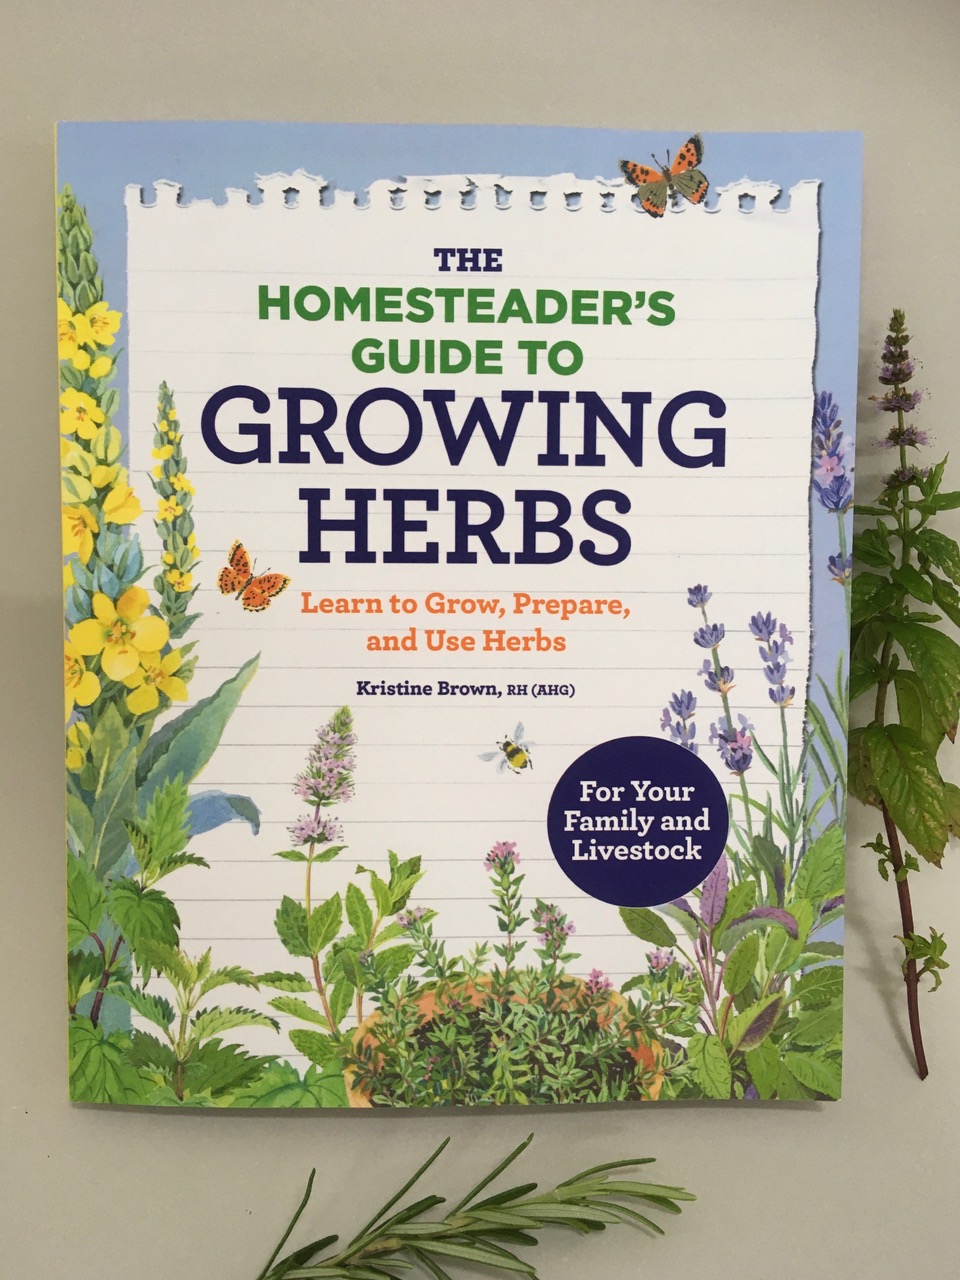 https://mendolaart.com/wp-content/uploads/2020/09/Growing-Herbs-1-100x100.jpg